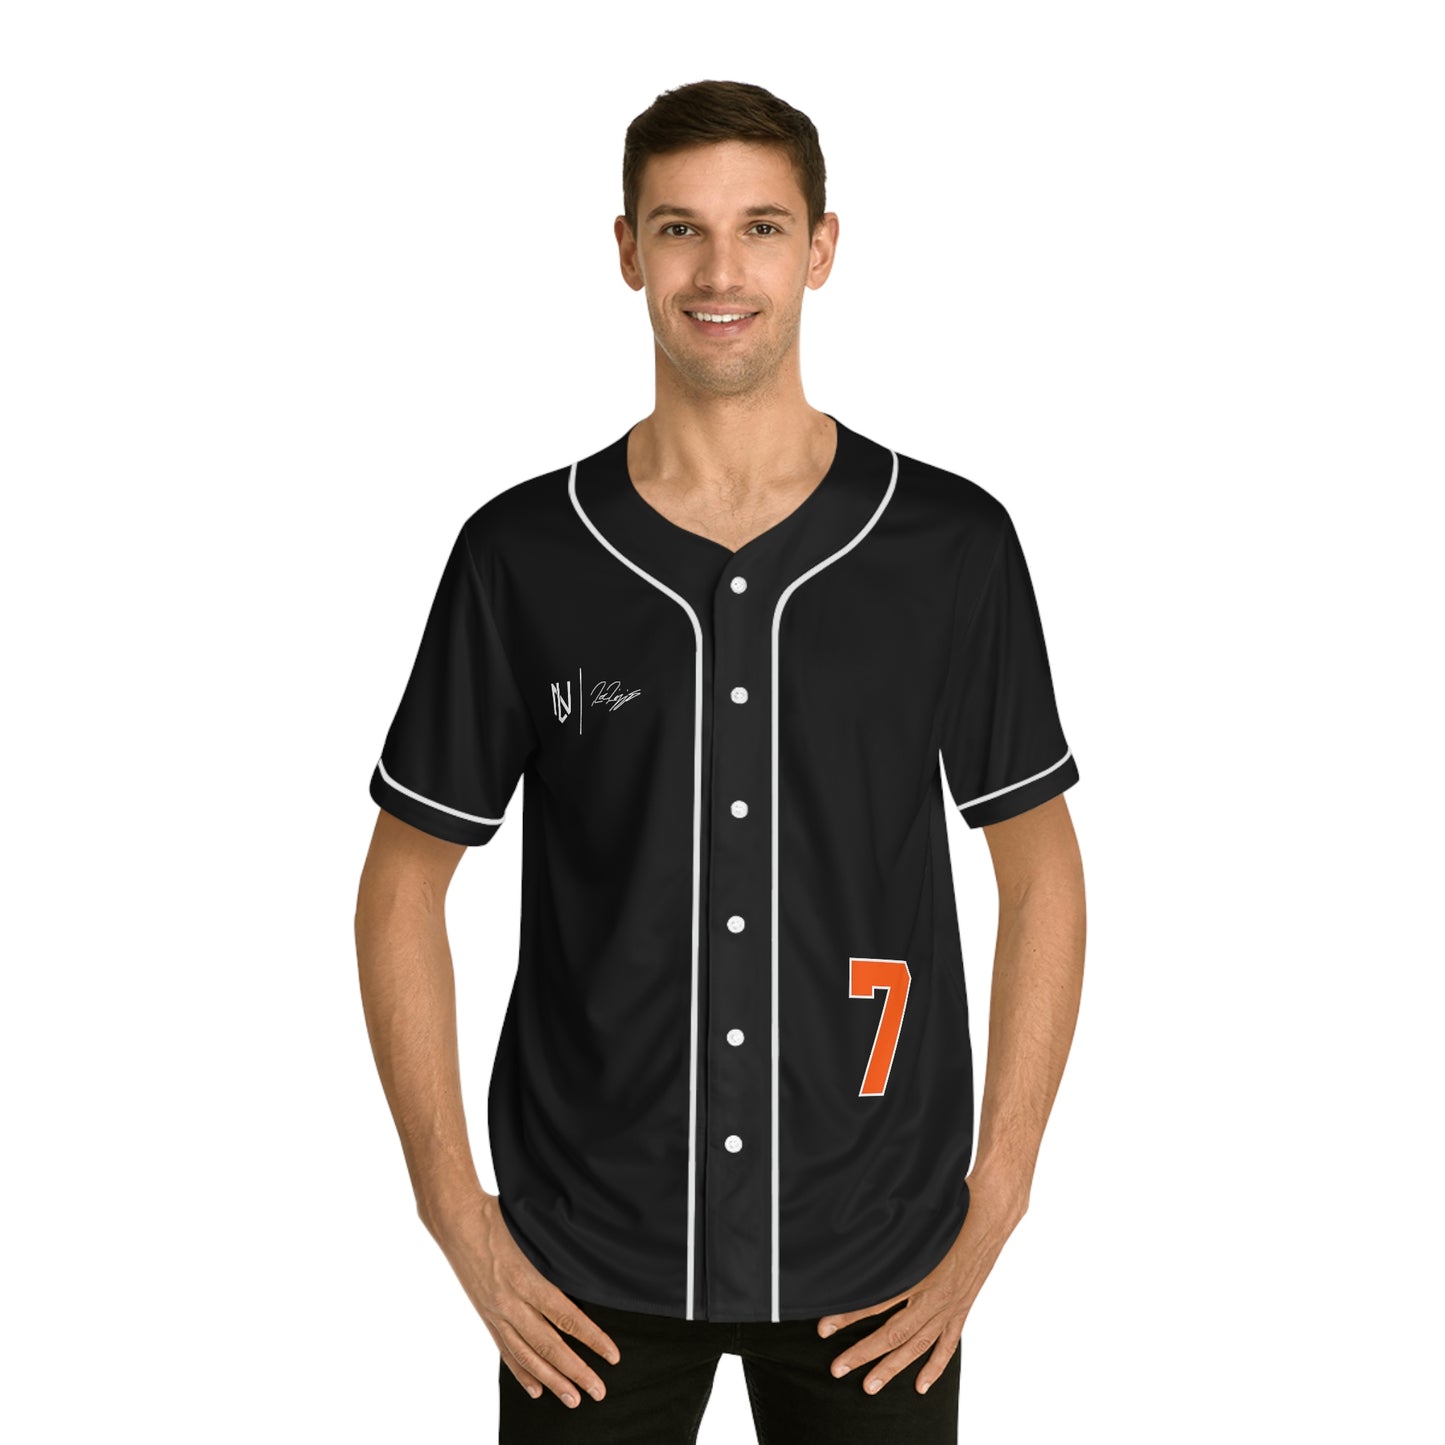 Roc Riggio Baseball Jersey (Black)